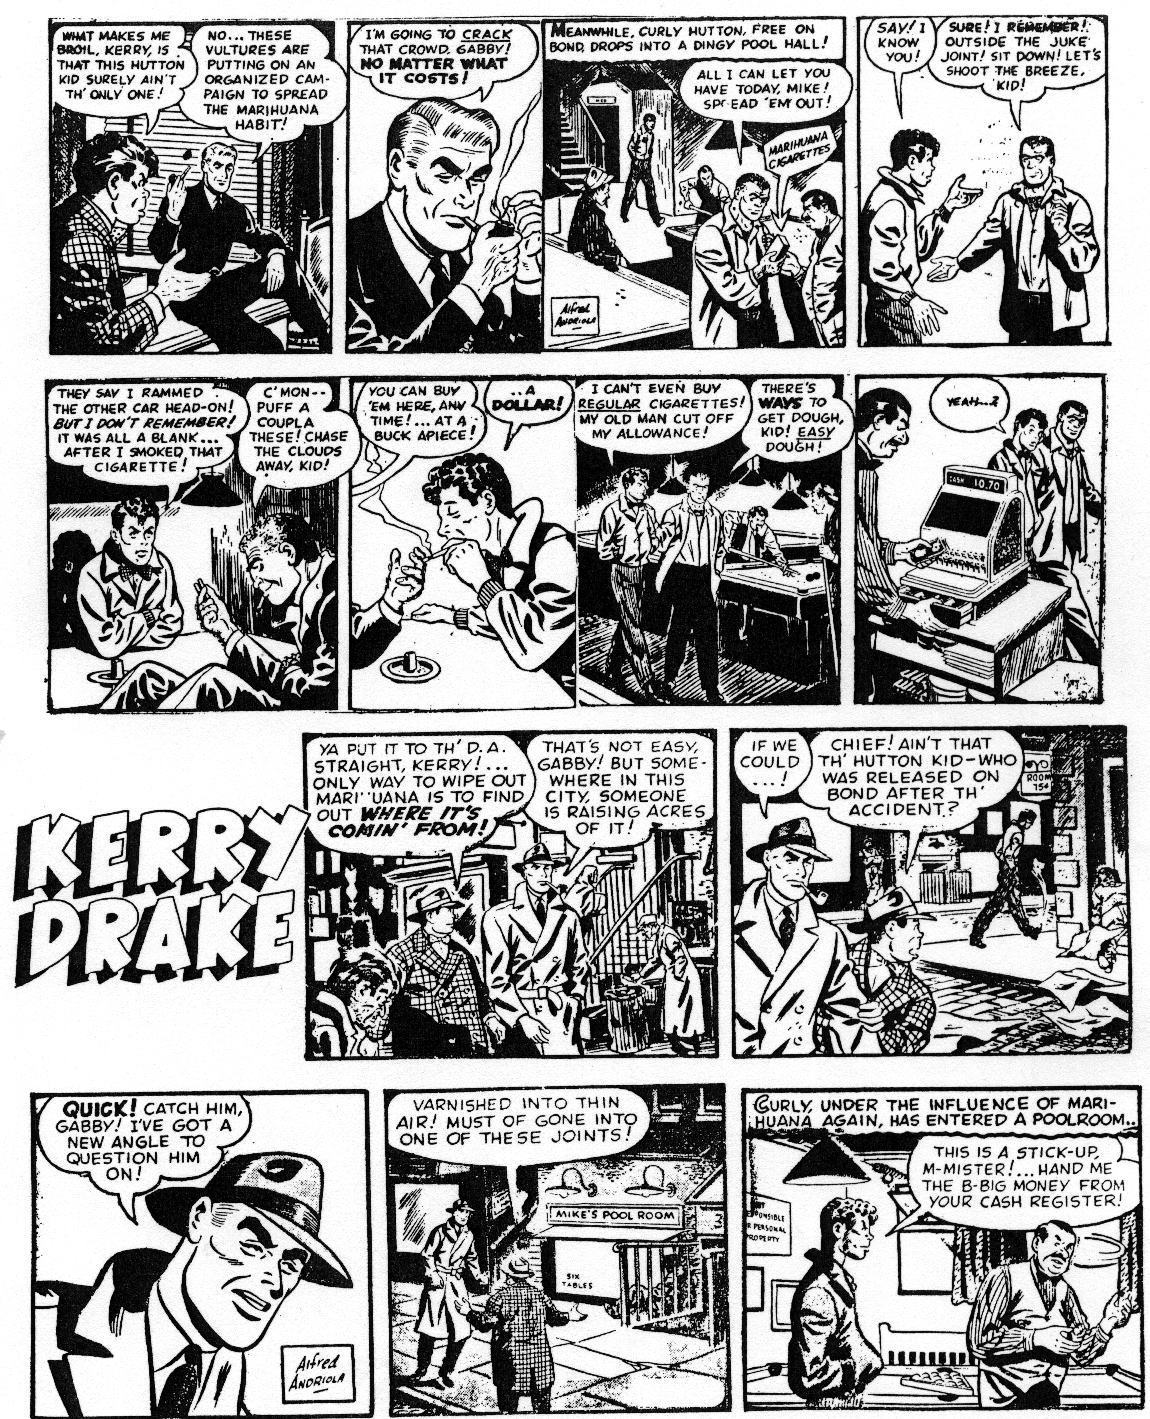 Kerry Drake, 1946 Anti-Drug Story